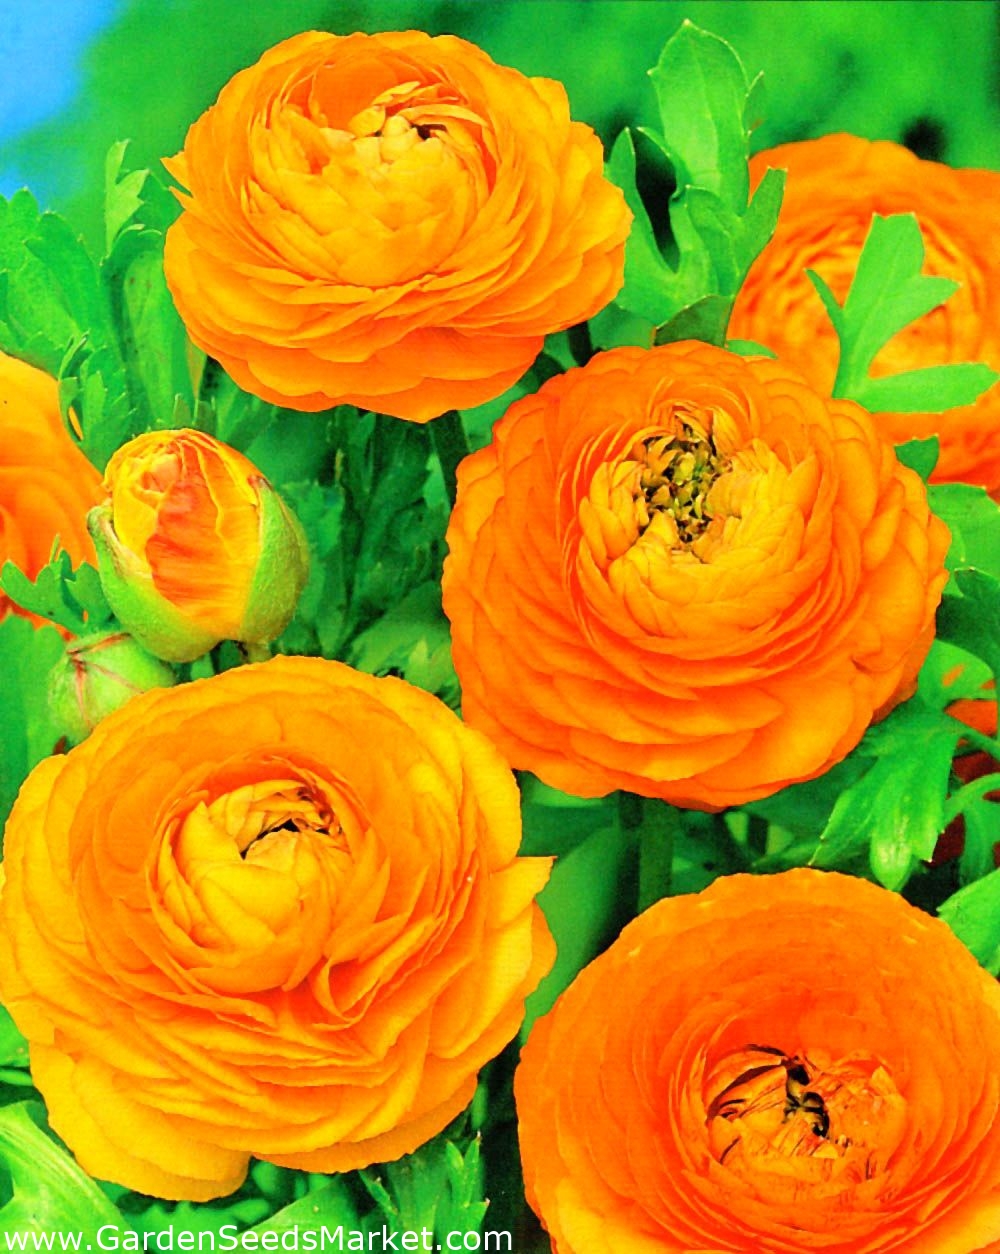 Bouton d'or orange - Grand pack! - 100 pièces – Garden Seeds Market |  Livraison gratuite